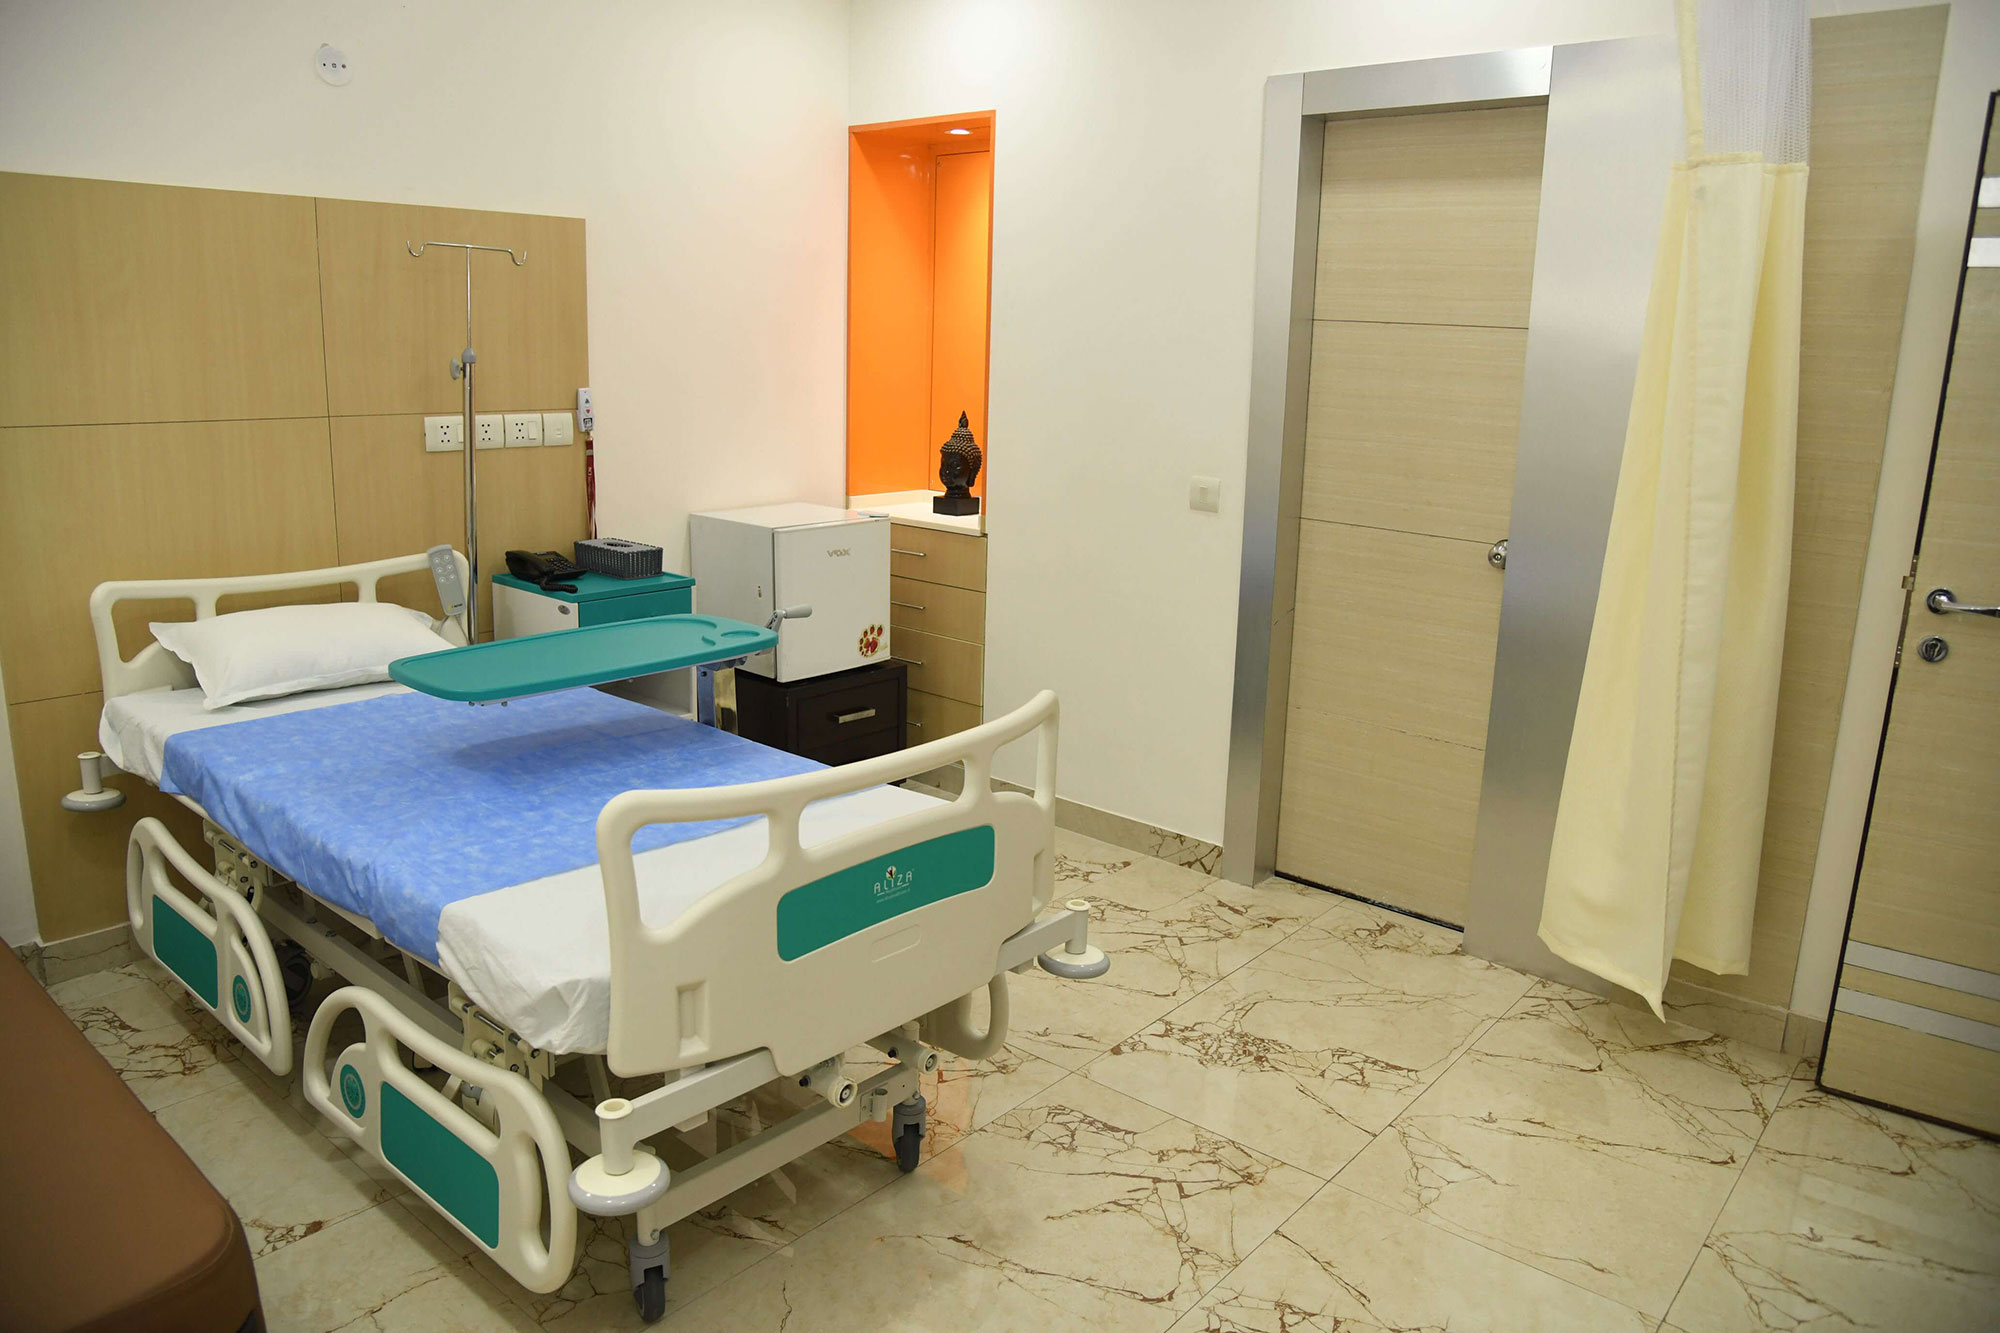 sci hospital room